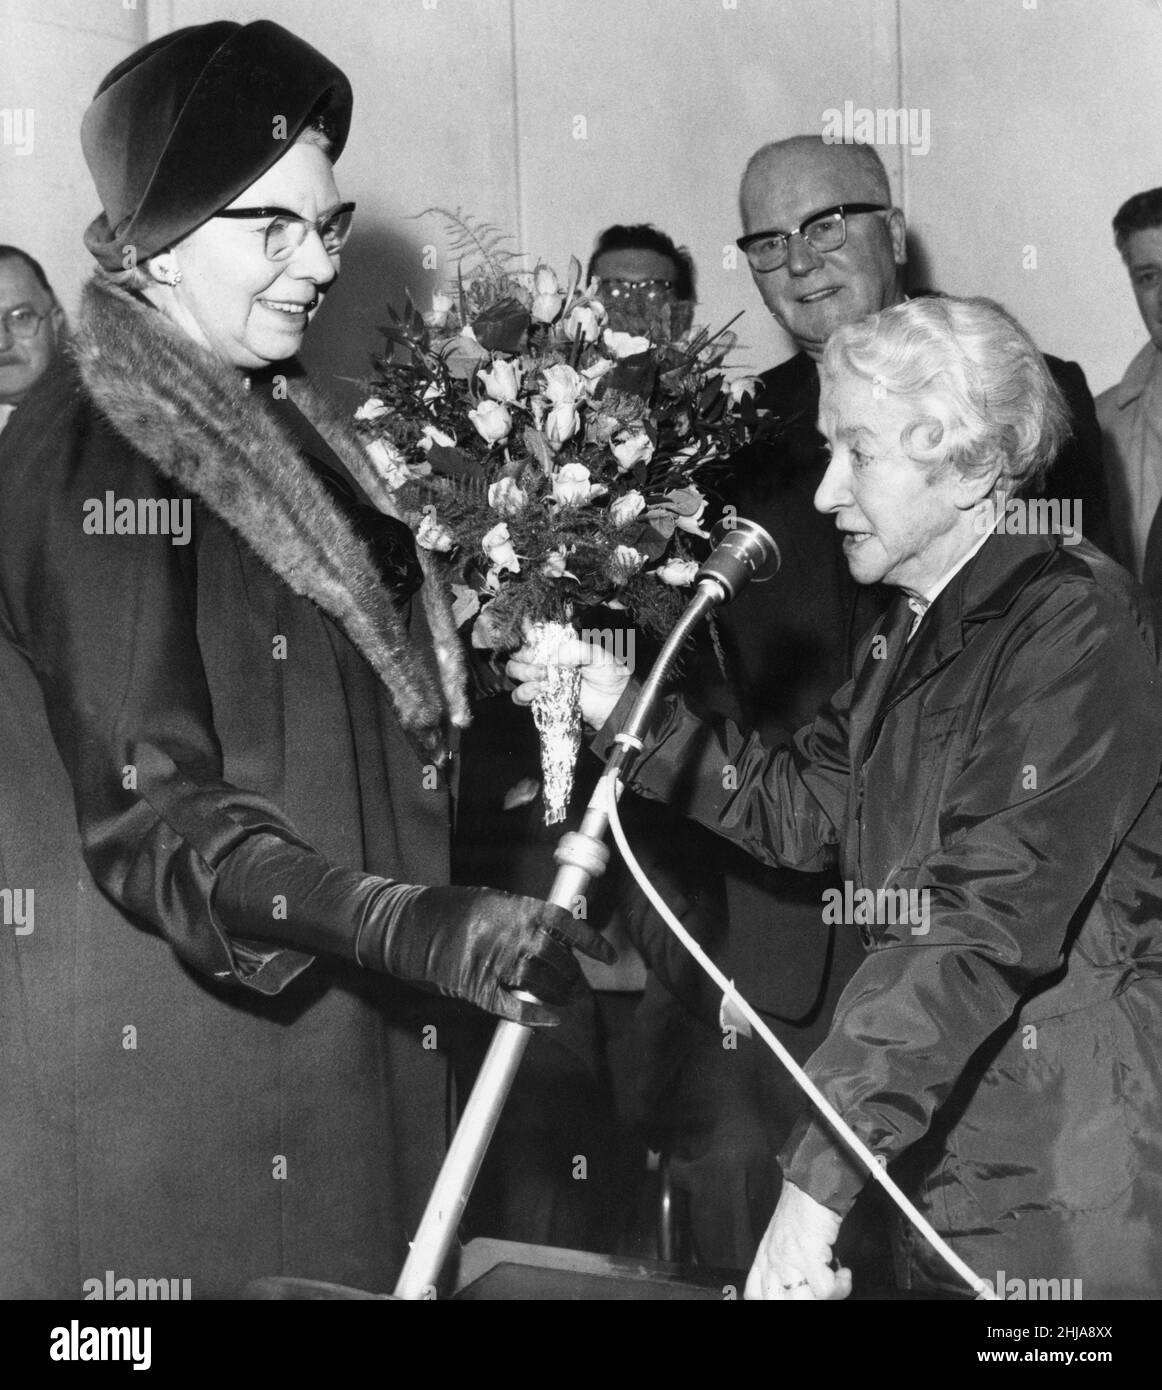 St John's Retail Market, Liverpool, le 13th mars 1964.La Dame Mayoress de Liverpool, Mme John McMillan, reçoit un bouquet de Mme Jinny Reilly, âgée de 80 ans, qui vend des fleurs depuis plus de soixante ans. Banque D'Images